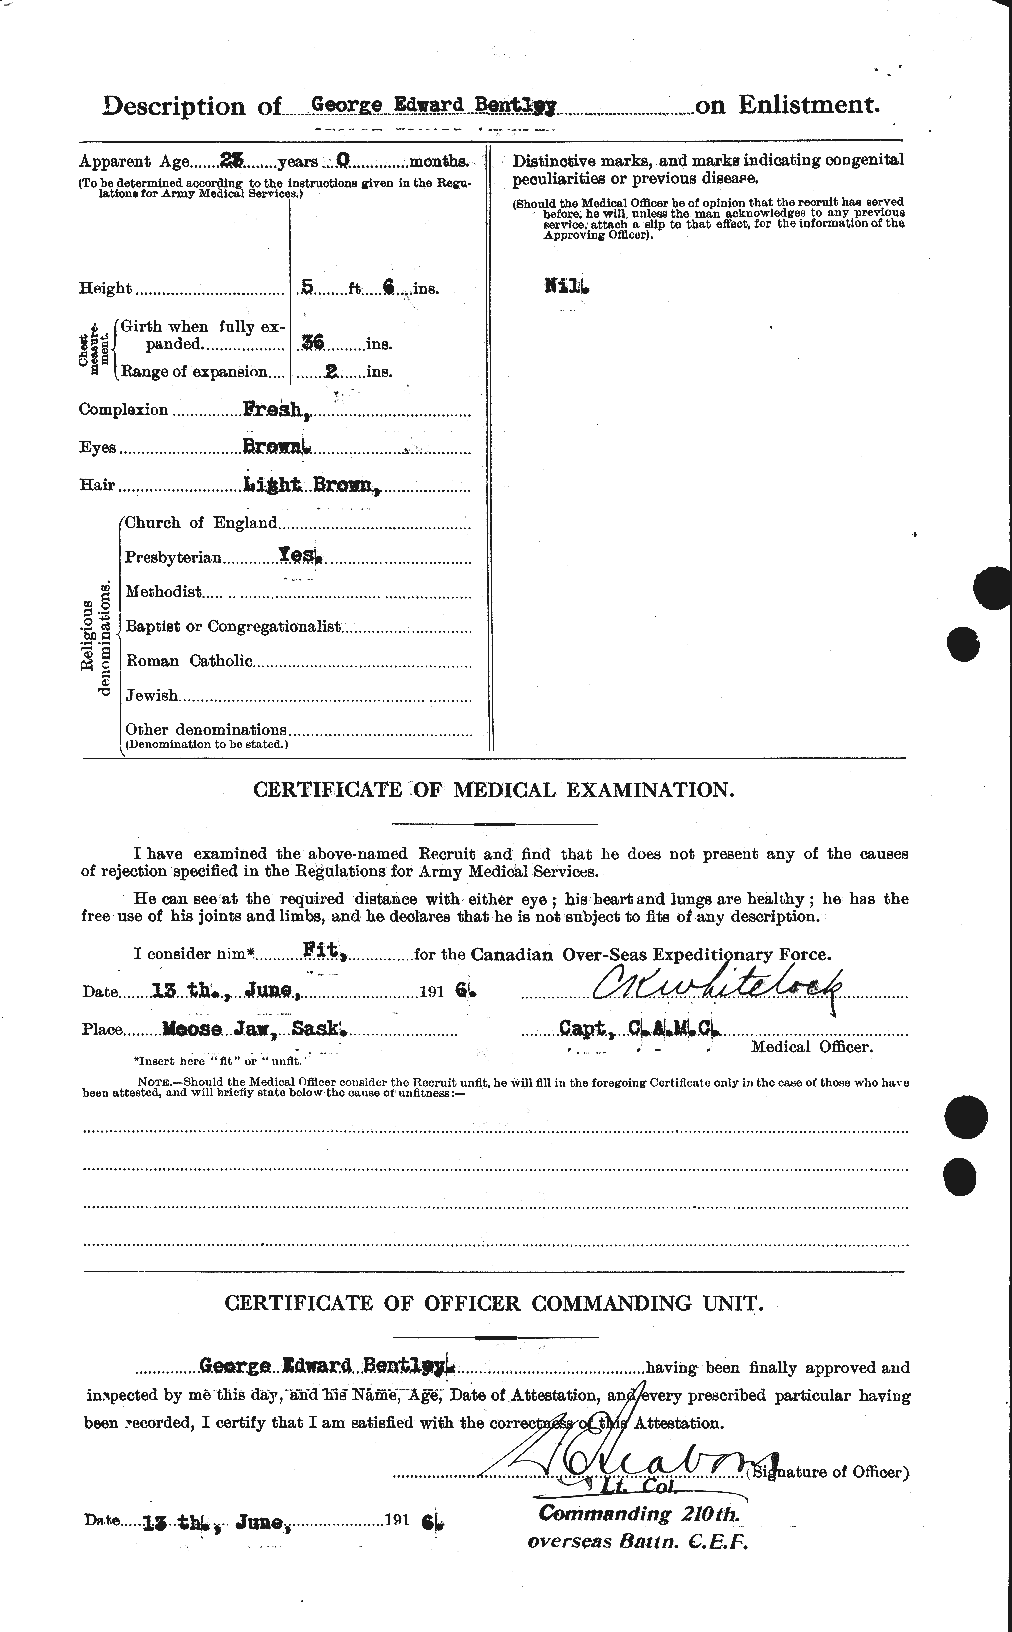 Dossiers du Personnel de la Première Guerre mondiale - CEC 237918b